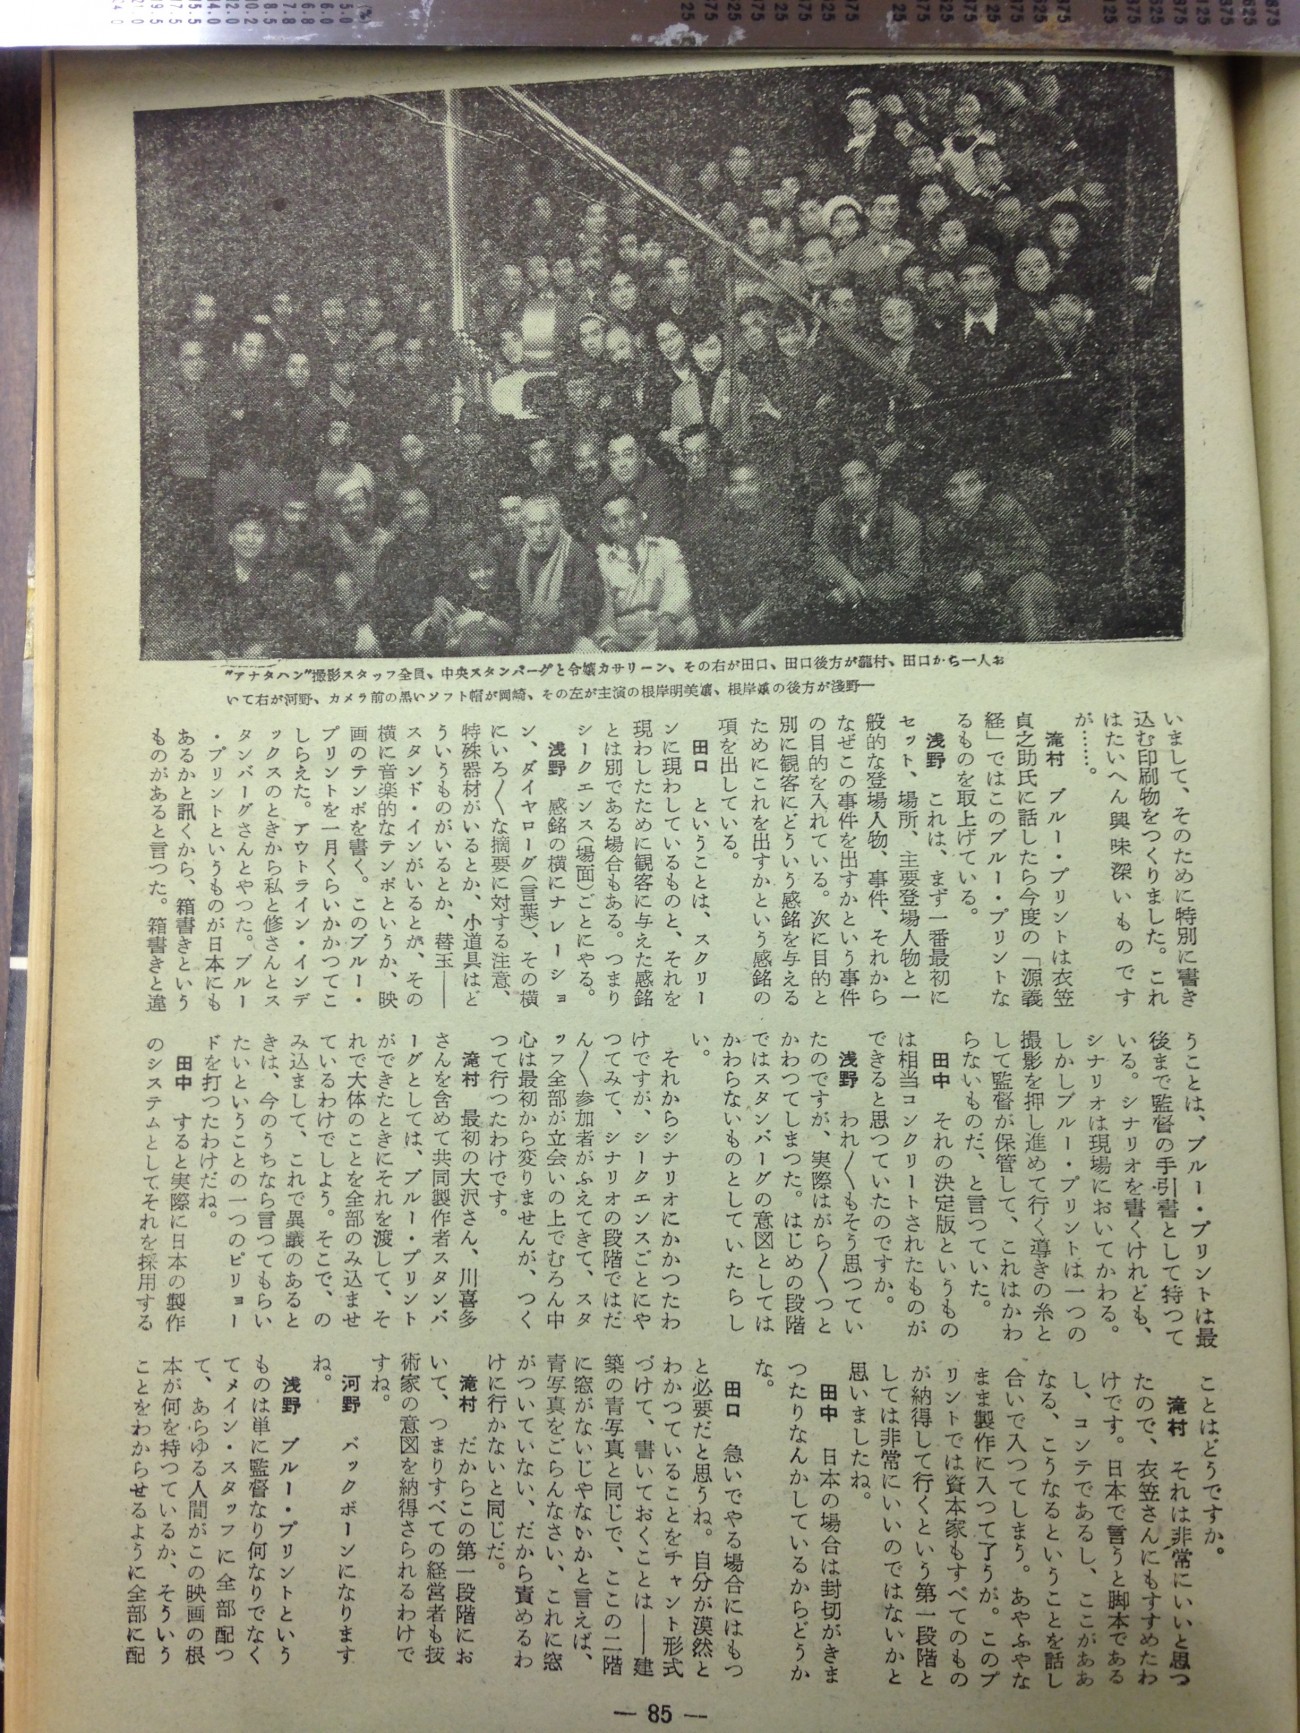 Josef von Sternberg et toute l'équipe d'Anatahan (photo parue en 1953 dans le numéro 65 de Kinema Junpo, en illustration d'une table ronde où certains collaborateurs racontent « ce qu'ils ont appris de Sternberg »).